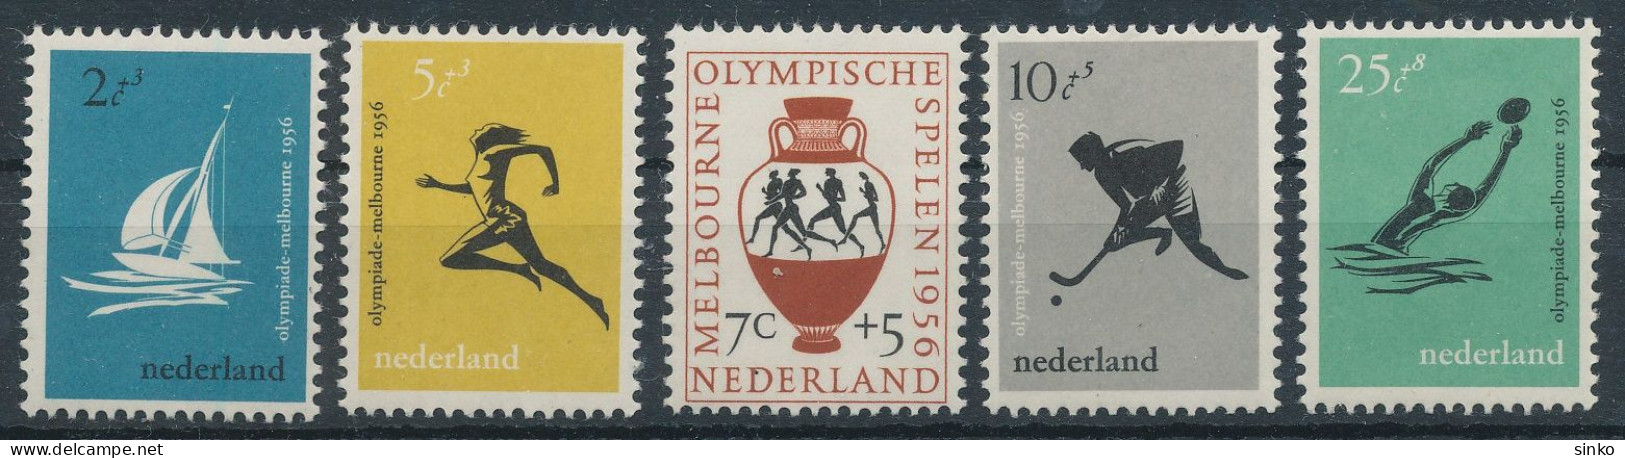 1956. Netherlands - Olympics - Estate 1956: Melbourne